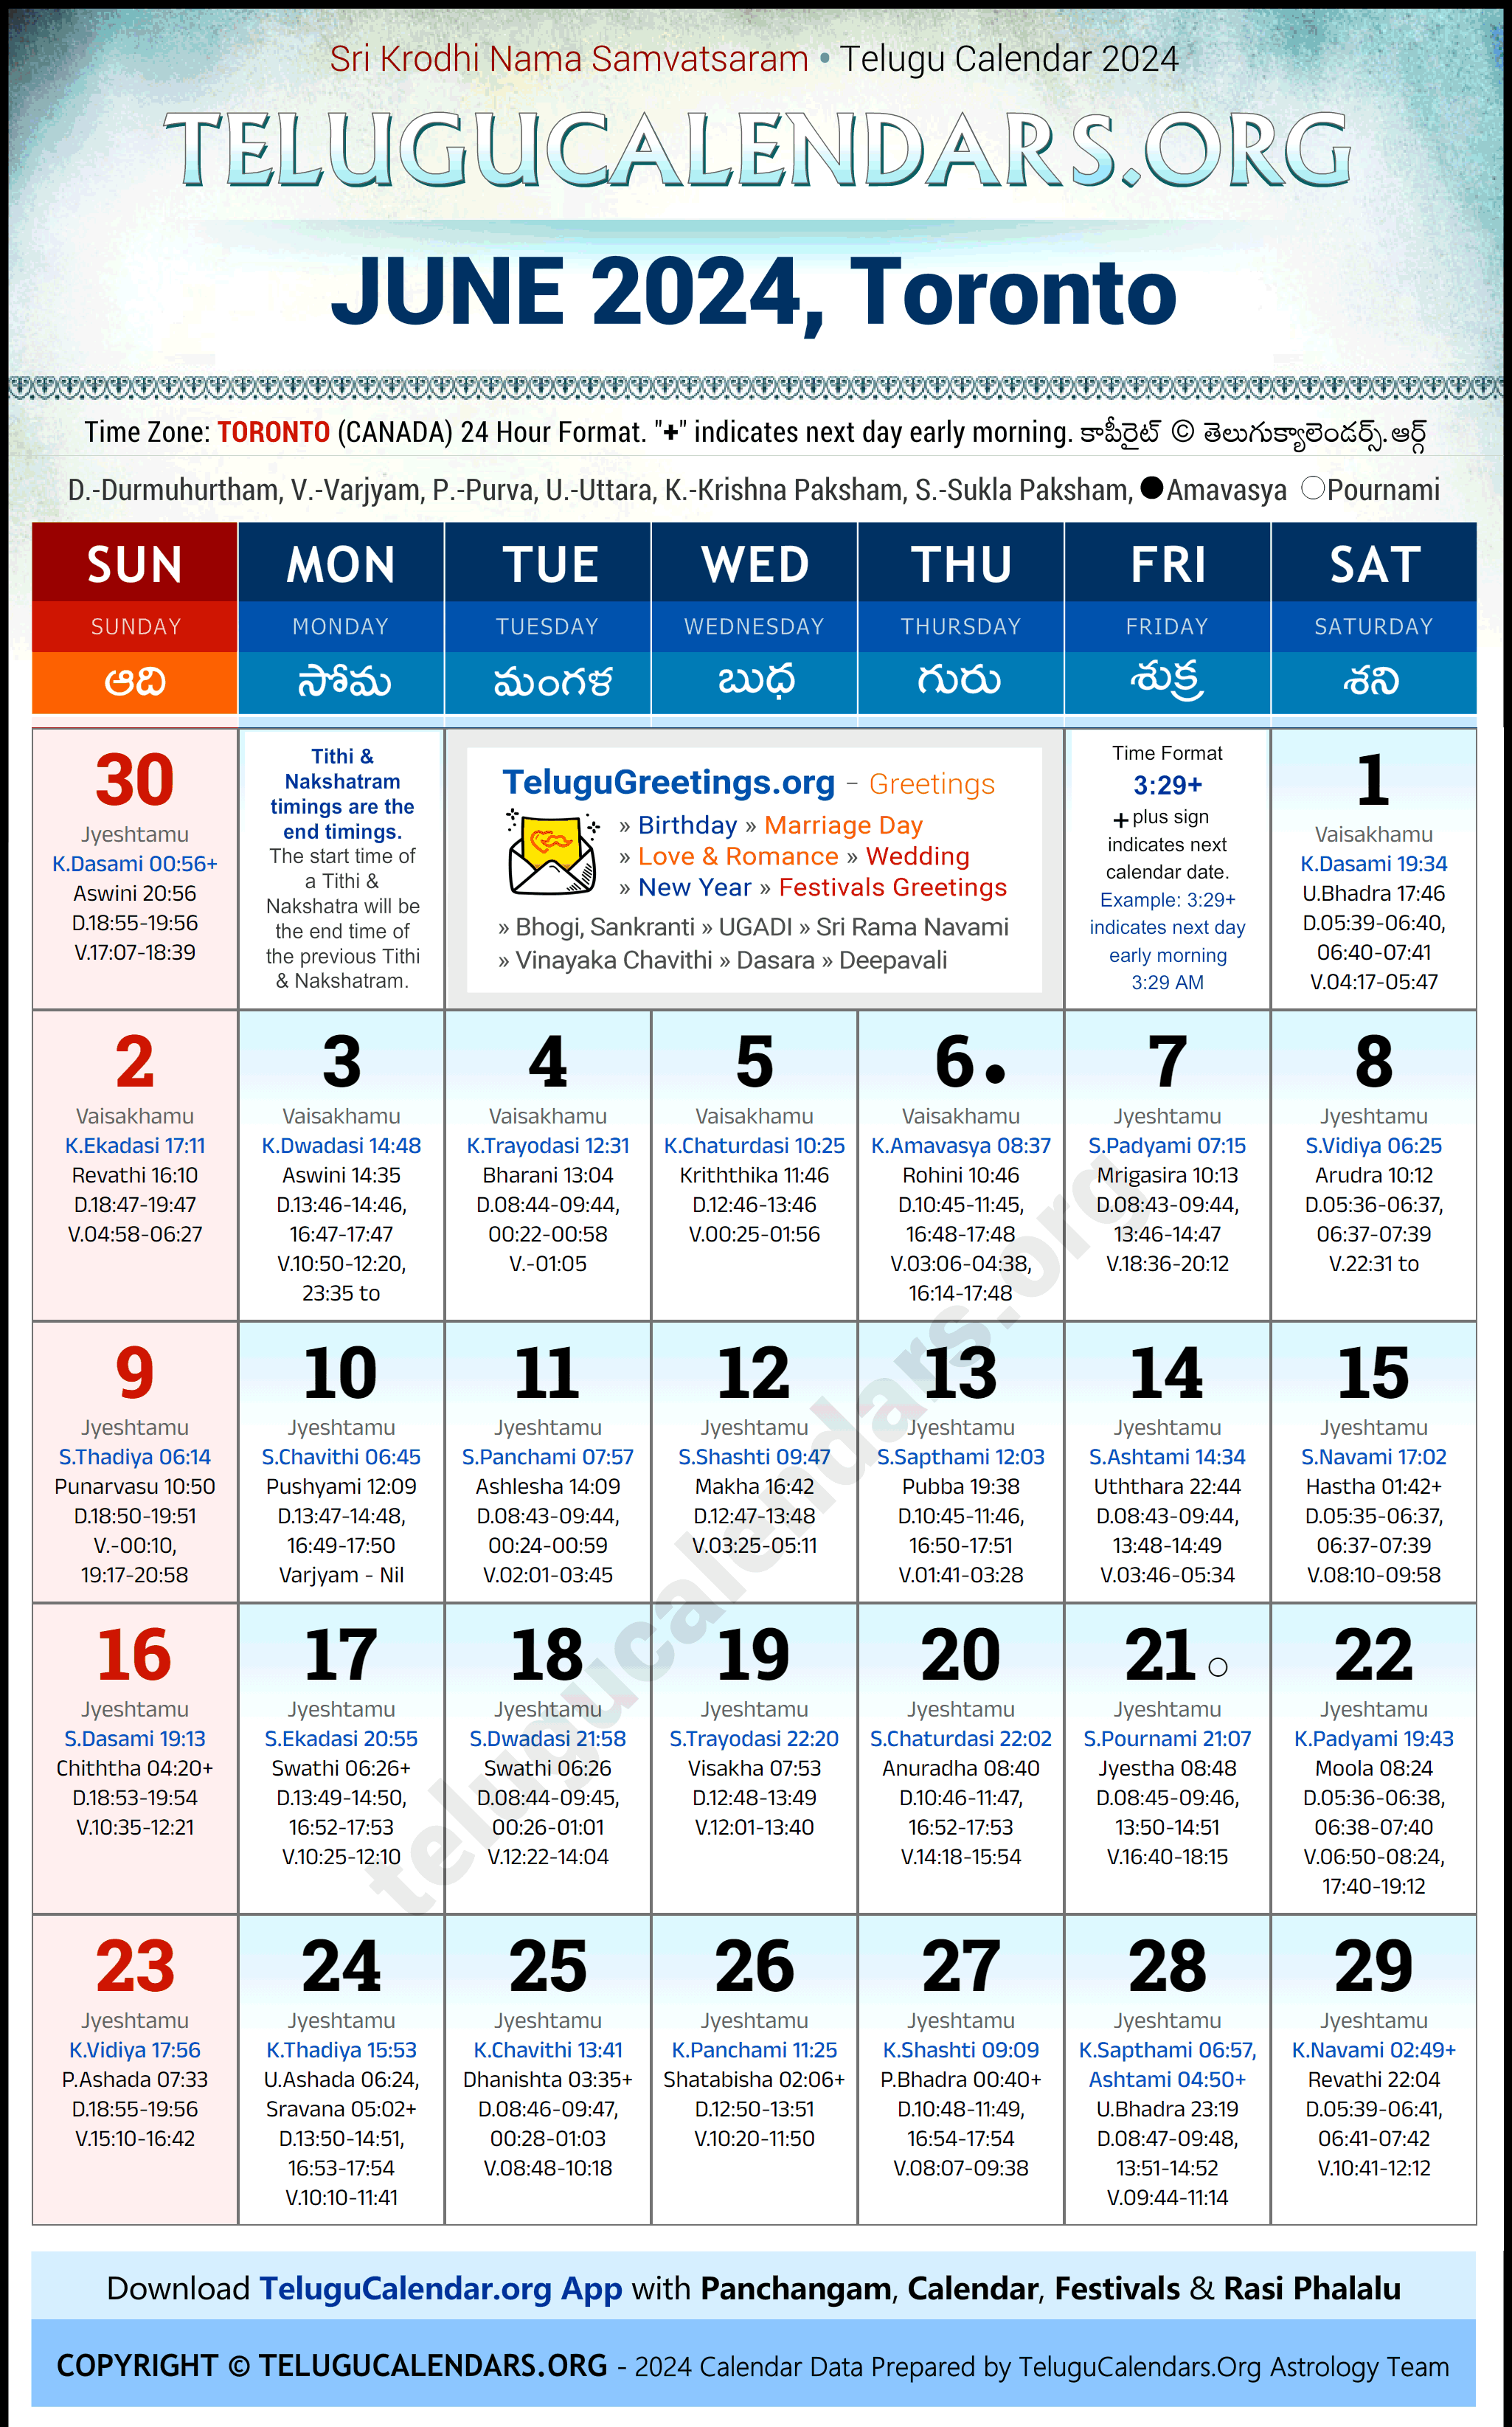 Telugu Calendar 2024 June Festivals for Toronto